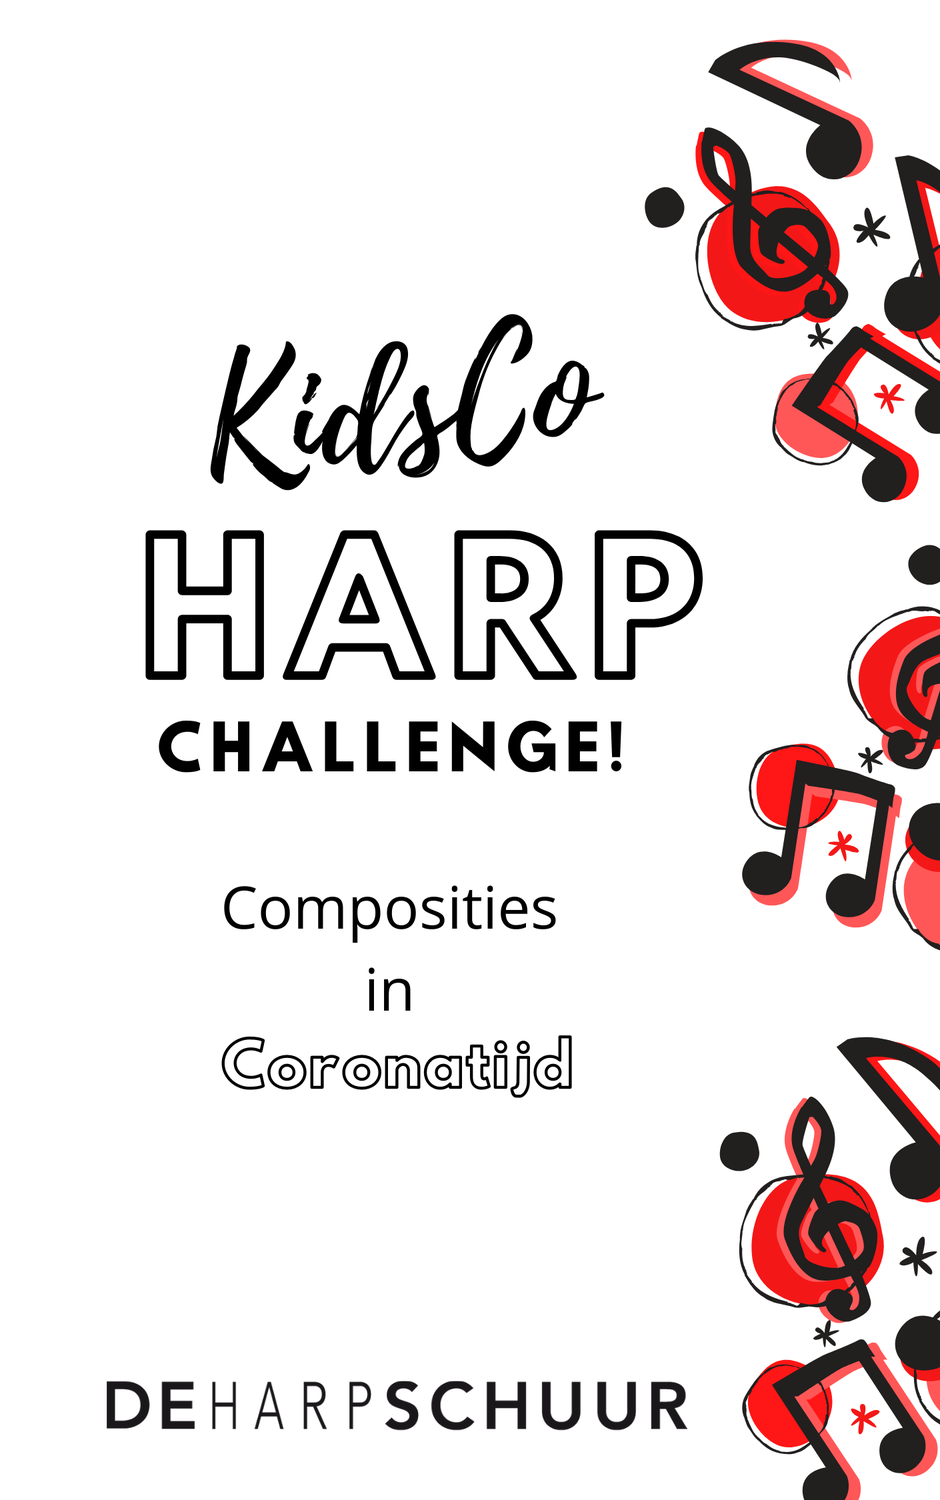 KidsCo Harp Challenge Composities